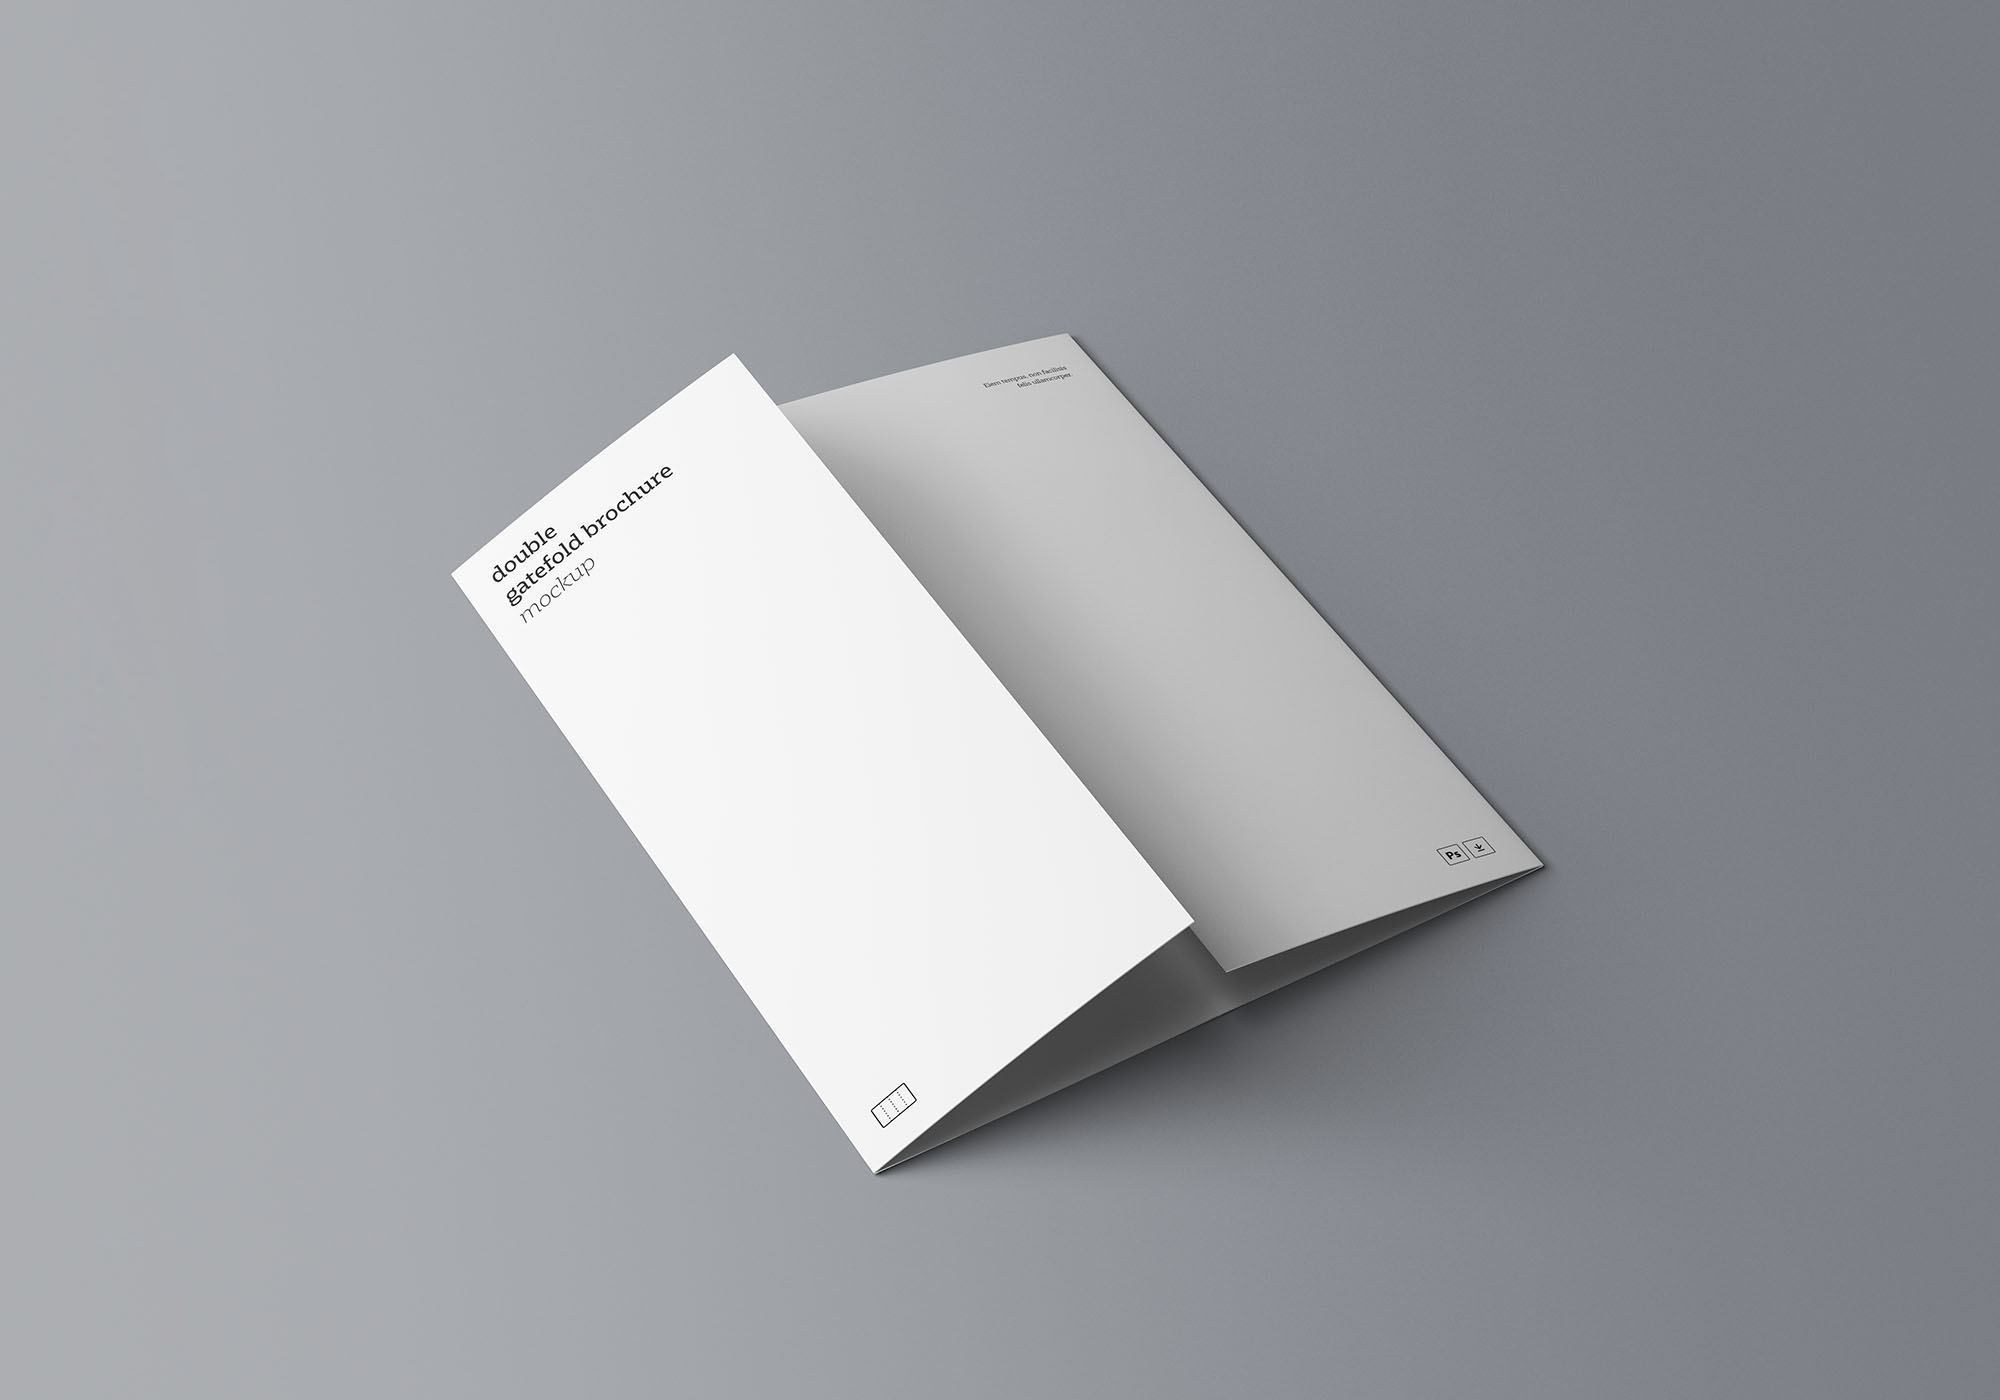 7个不同角度的三折页小册子展示样机 3 Different Angles Of Tri-Fold Brochure Display Prototype插图